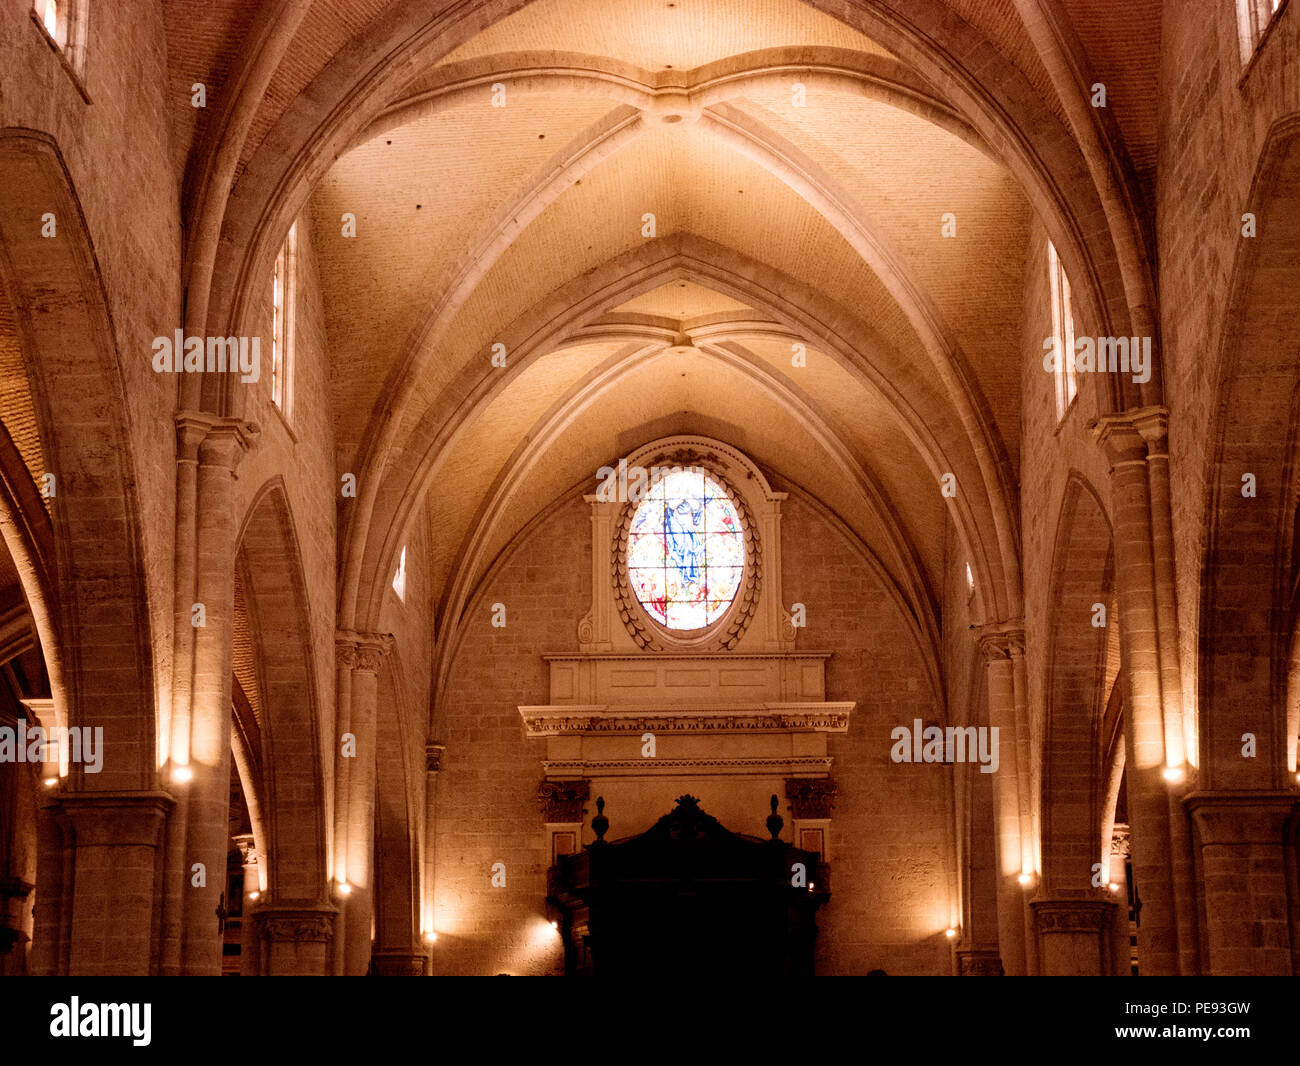 Plafond gothique dans la cathédrale de Valence, Espagne Banque D'Images